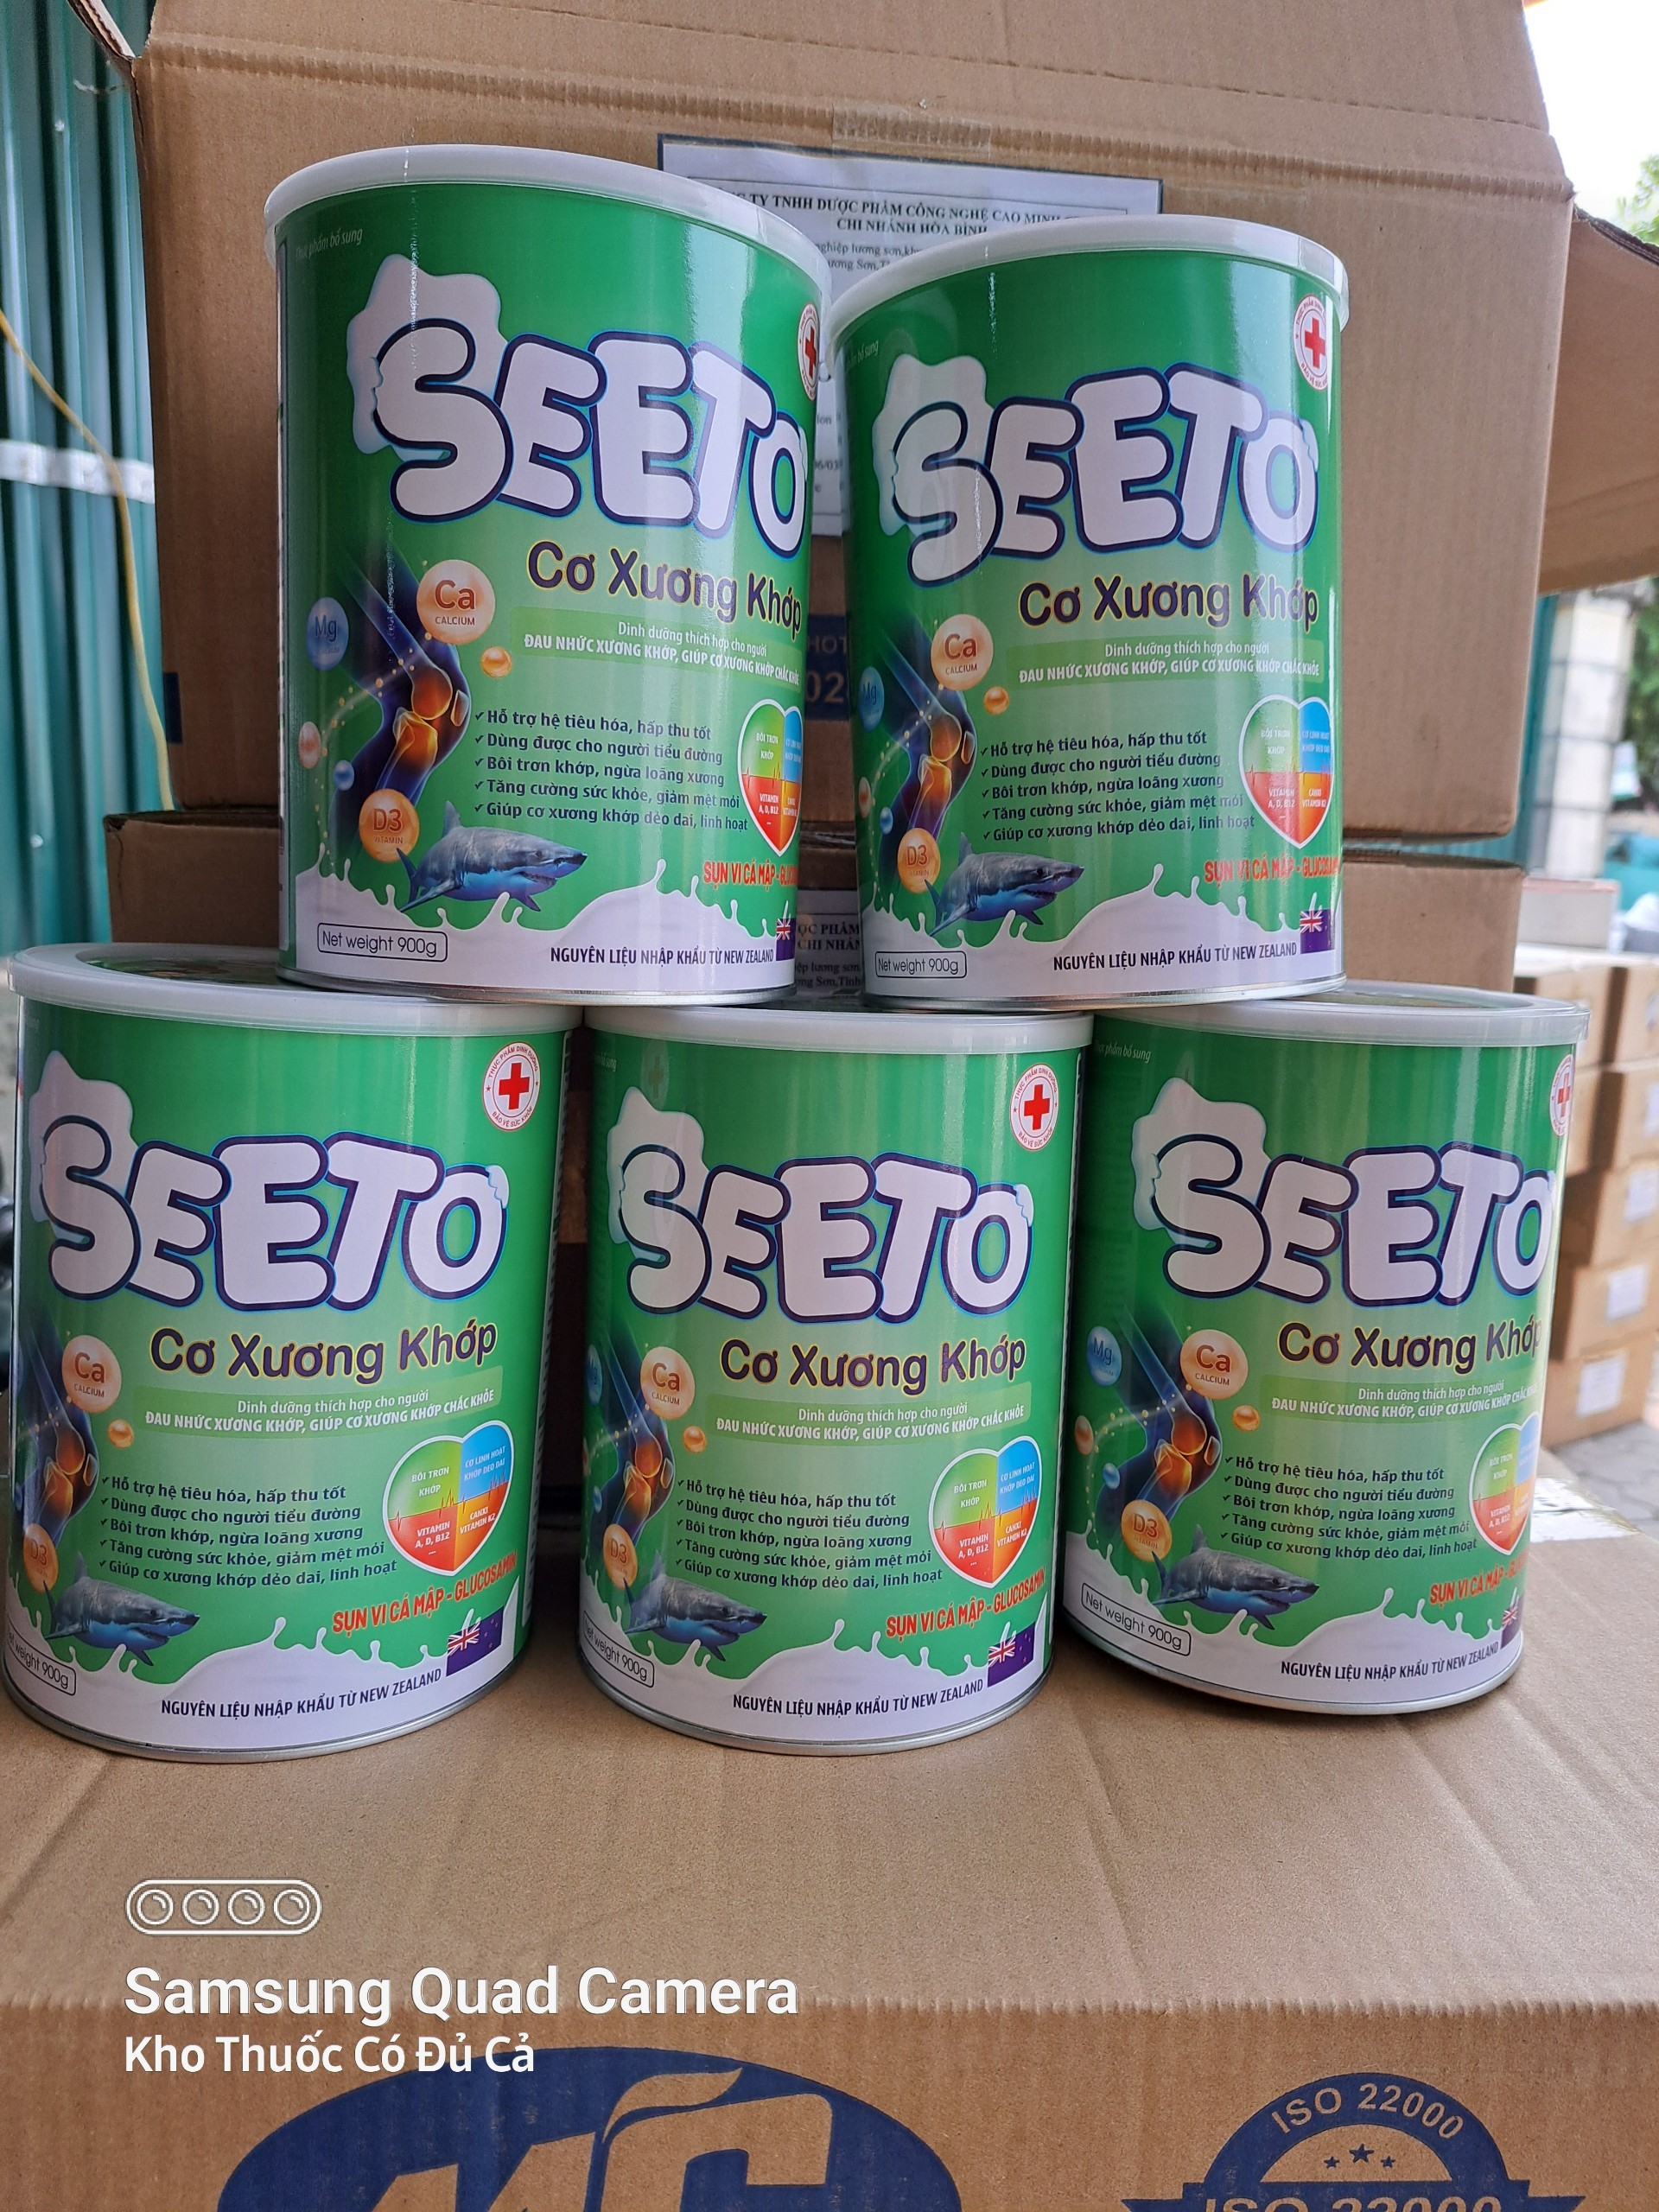 [FreeShip] Sữa bột SEETO Xương Khớp 900g thơm ngon cho người từ 30 tuổi trở lên, Hàng chính hãng chất...